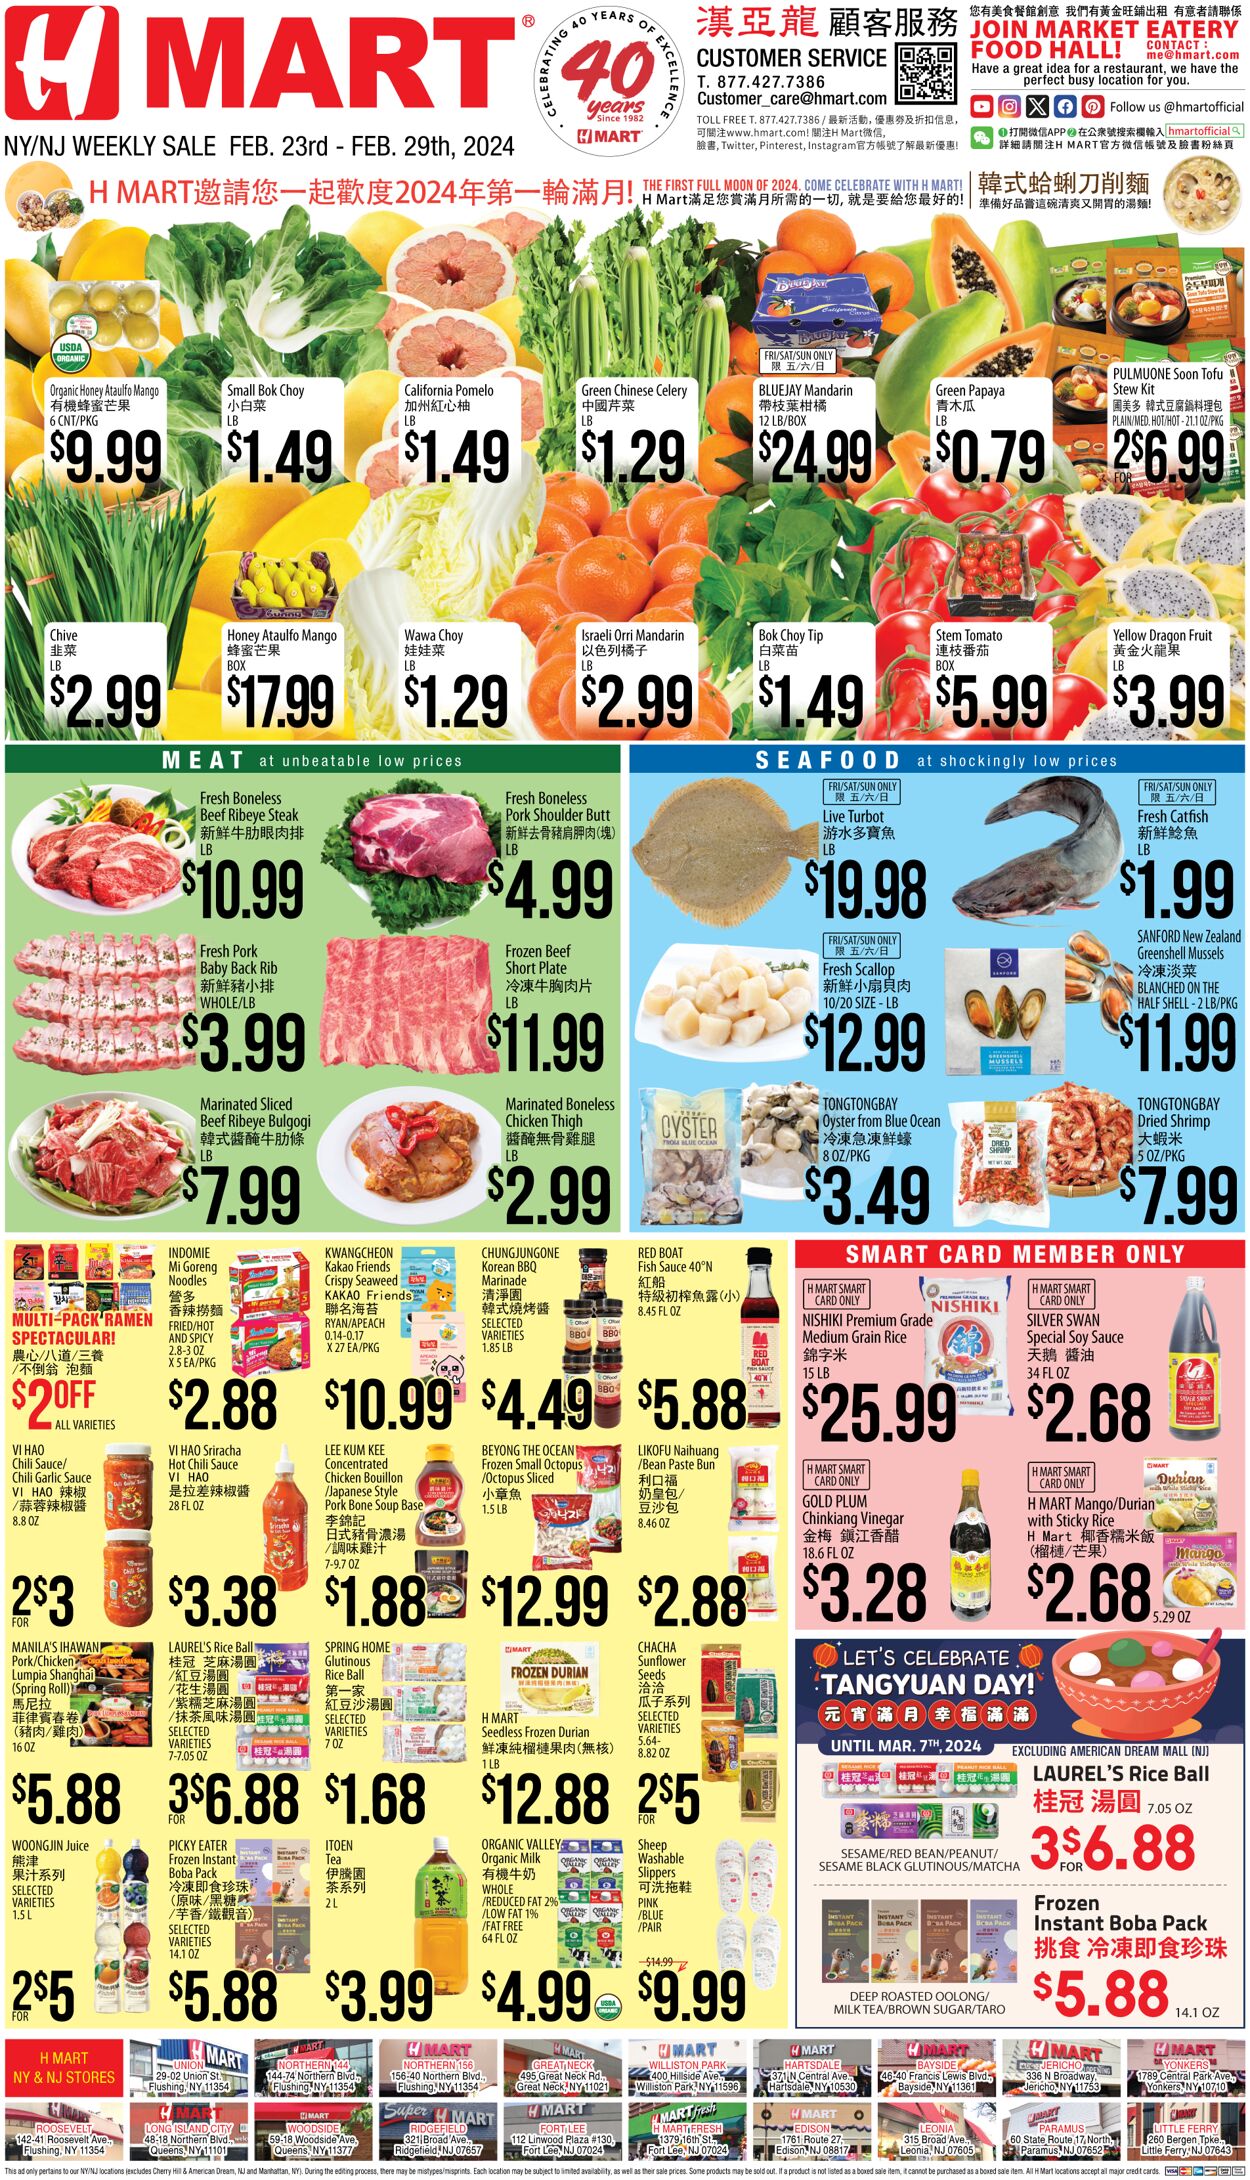 Weekly ad H-Mart - CHINESE(NY) Mar 1, 2024 - Mar 7, 2024